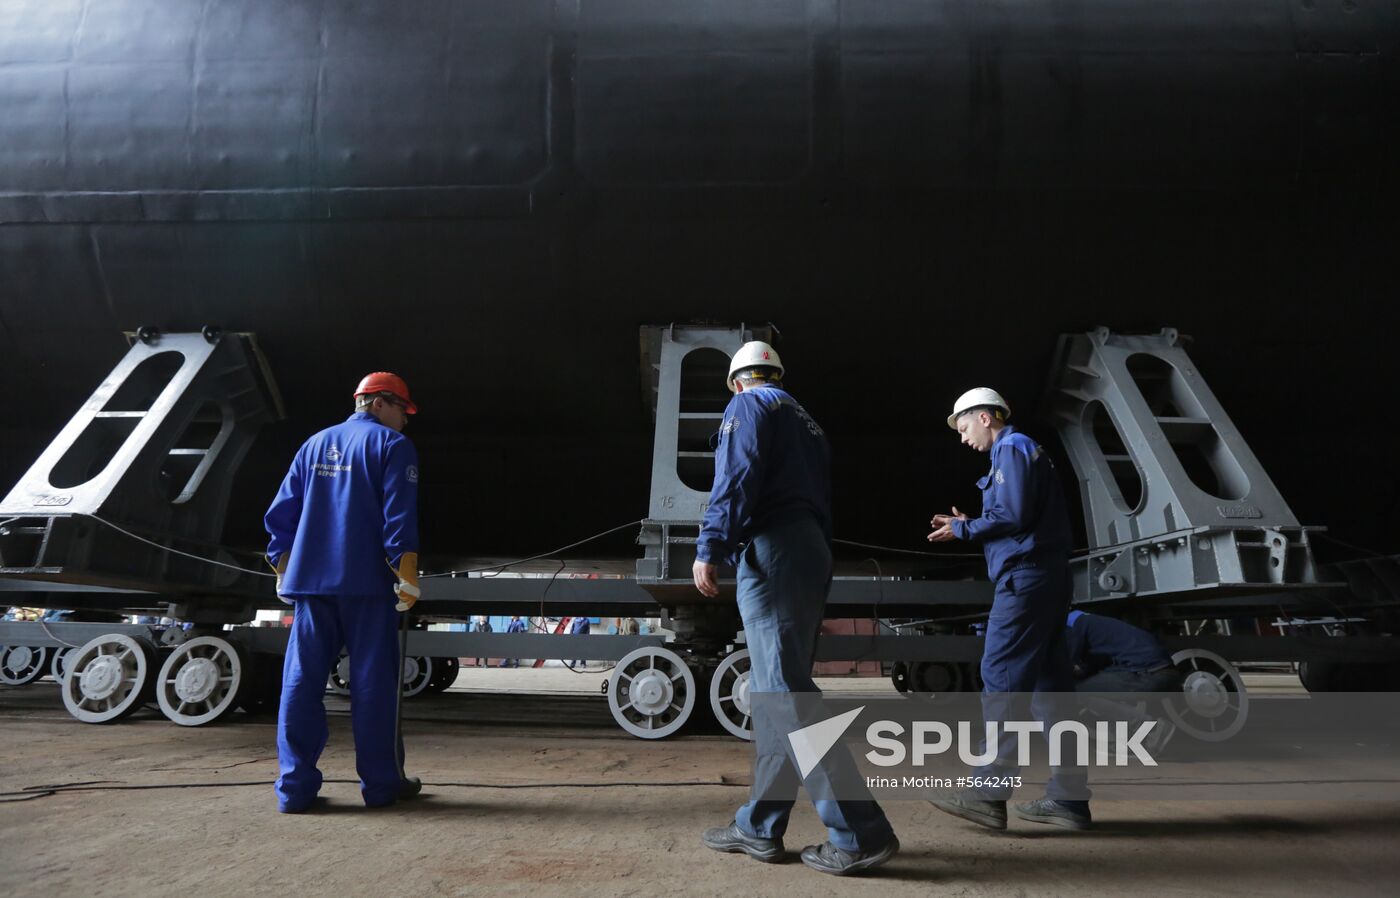 Russia Submarine Launching